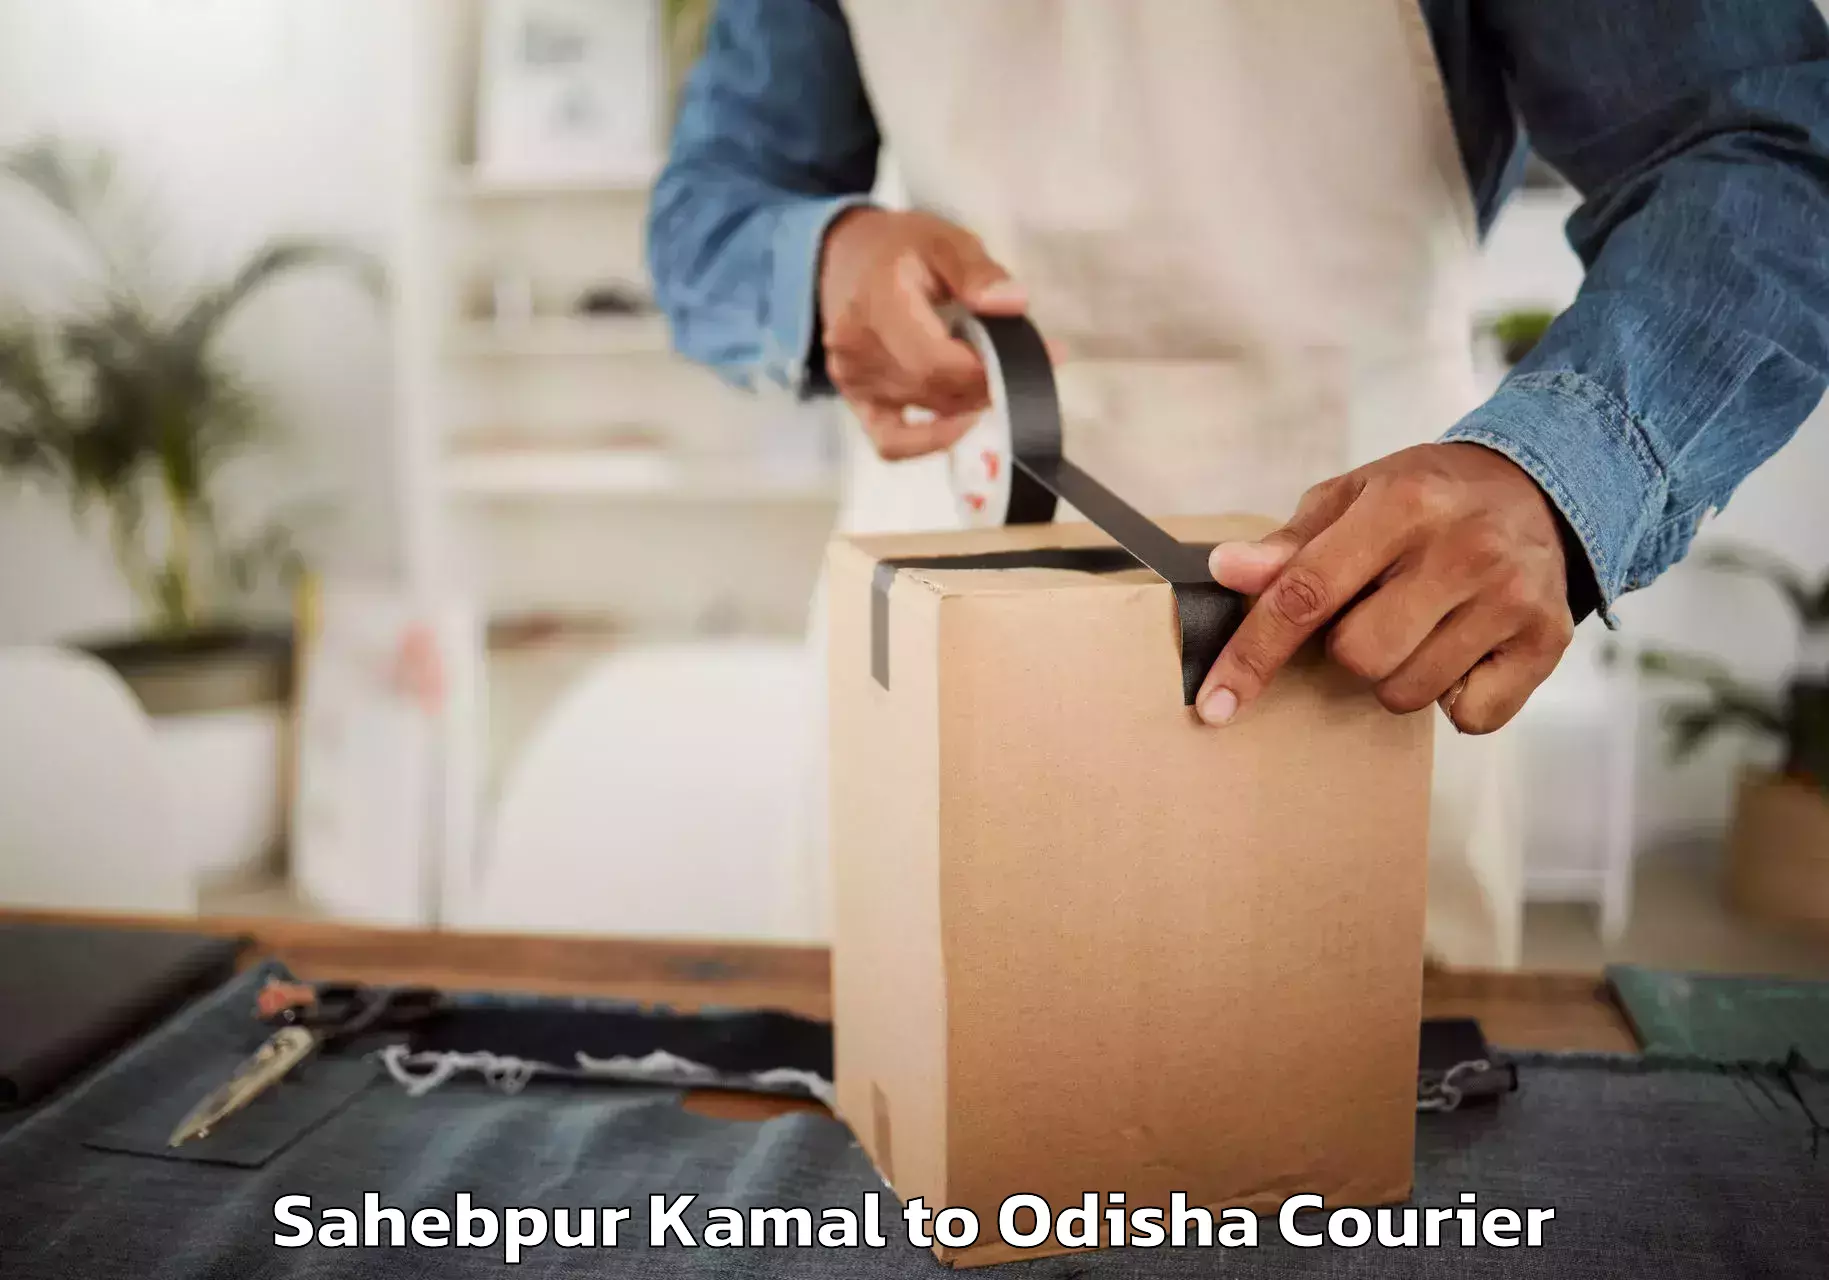 Household goods transport service Sahebpur Kamal to Sambalpur